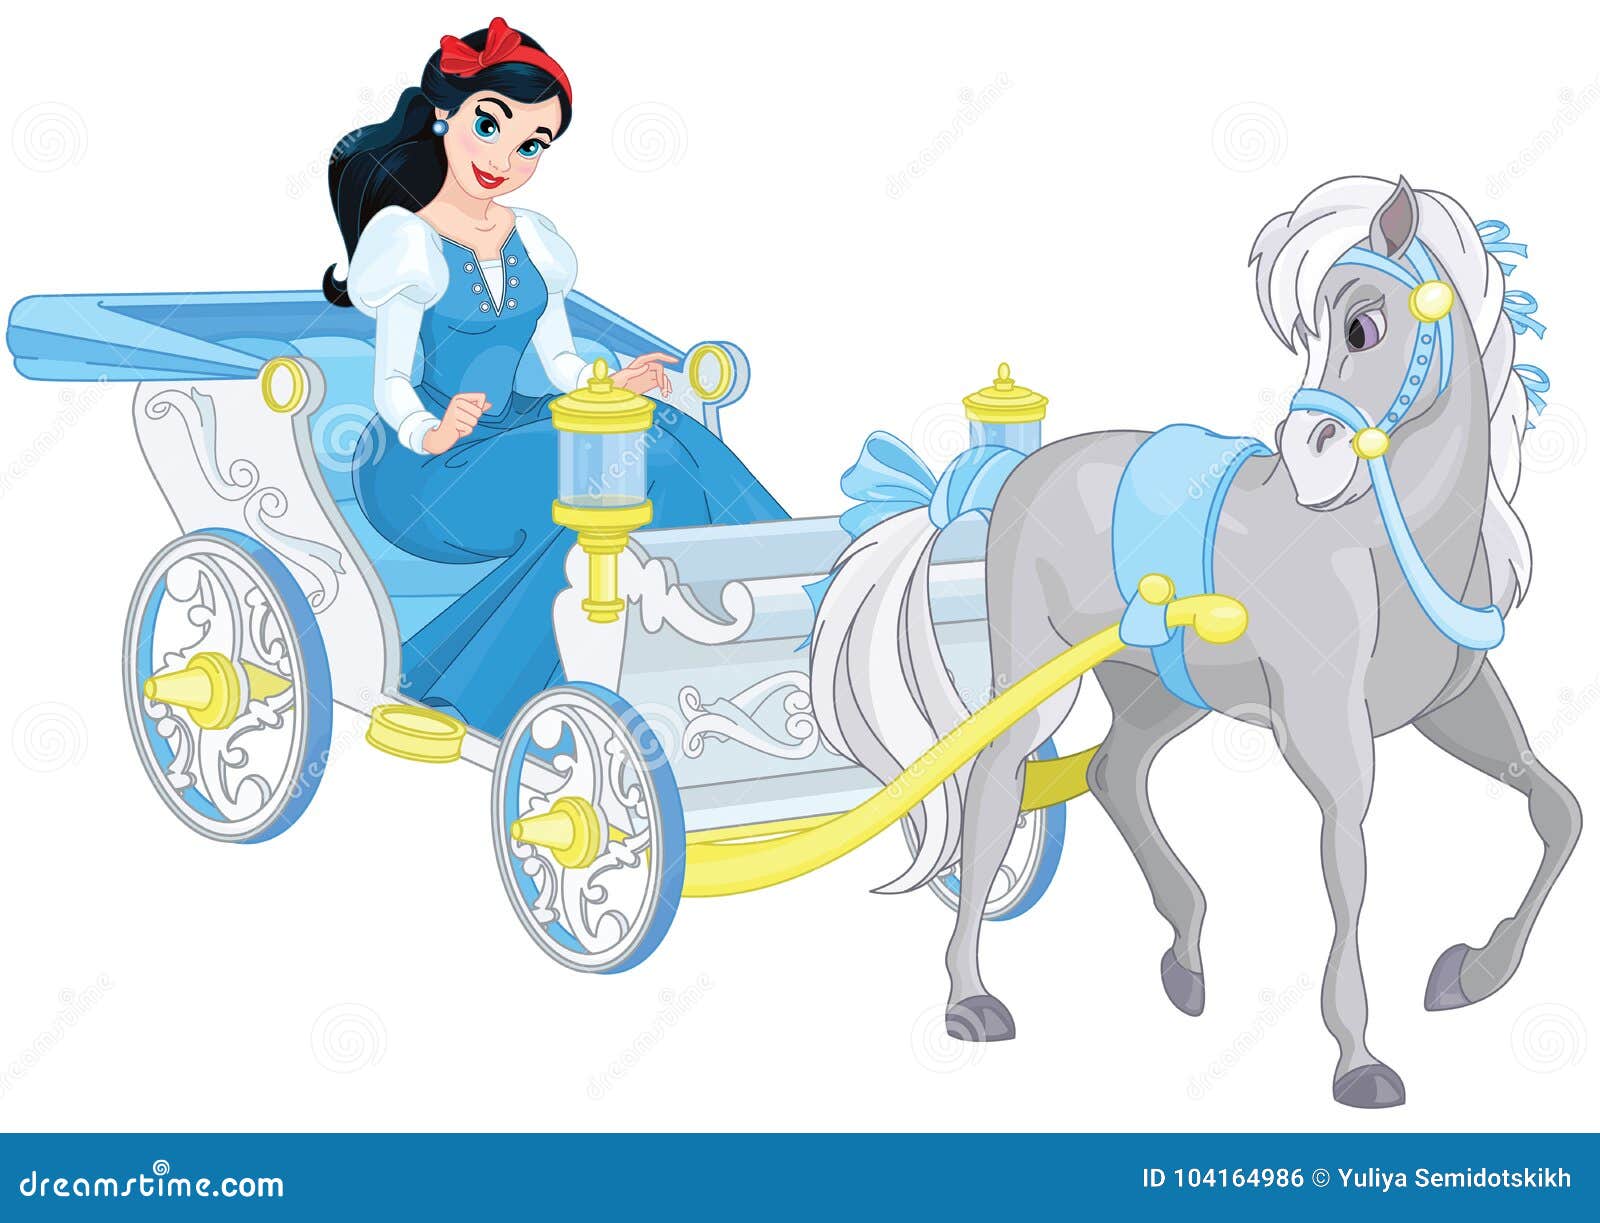 Принцесса едет. Карета принцессы. Карета Золушки с лошадьми. Золушка едет в карете. Принцесса едет в карете.